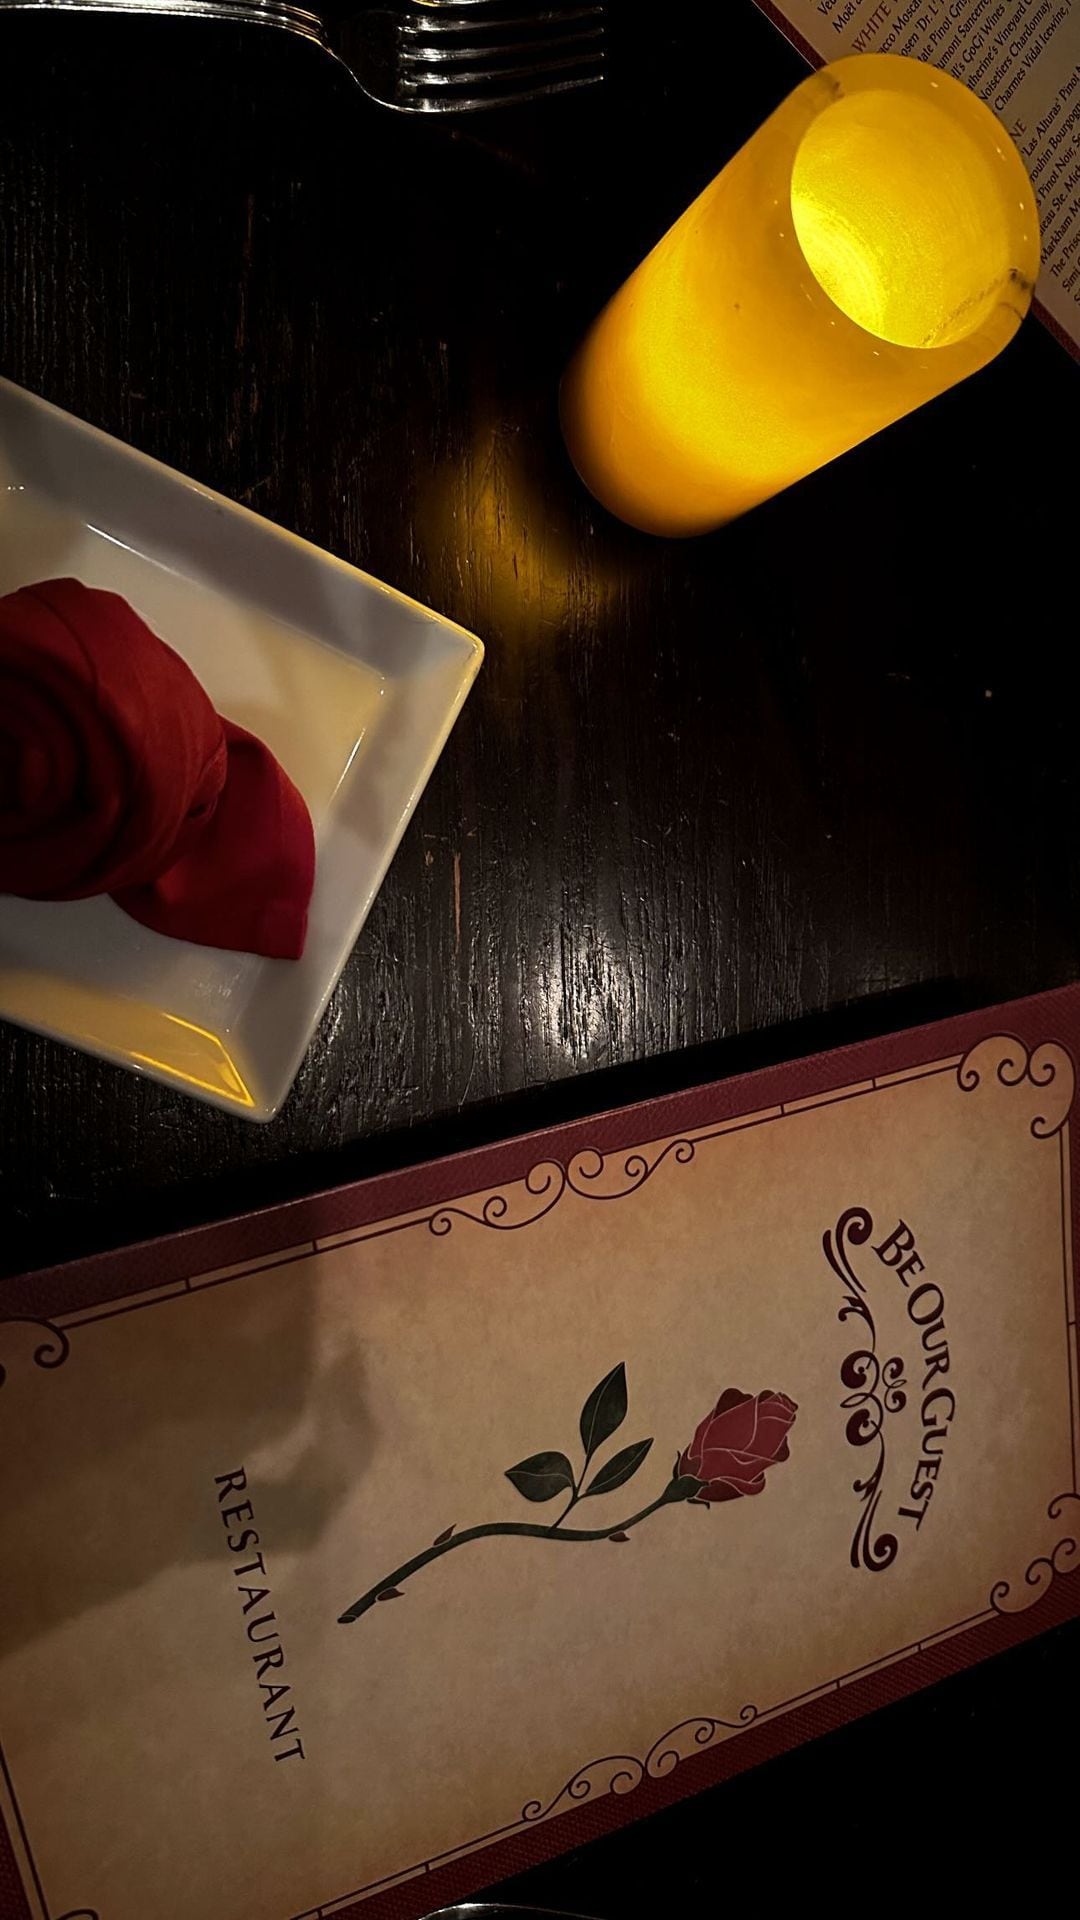 siempre fan de disney: antonela roccuzzo quedó deslumbrada en un restaurante mágico